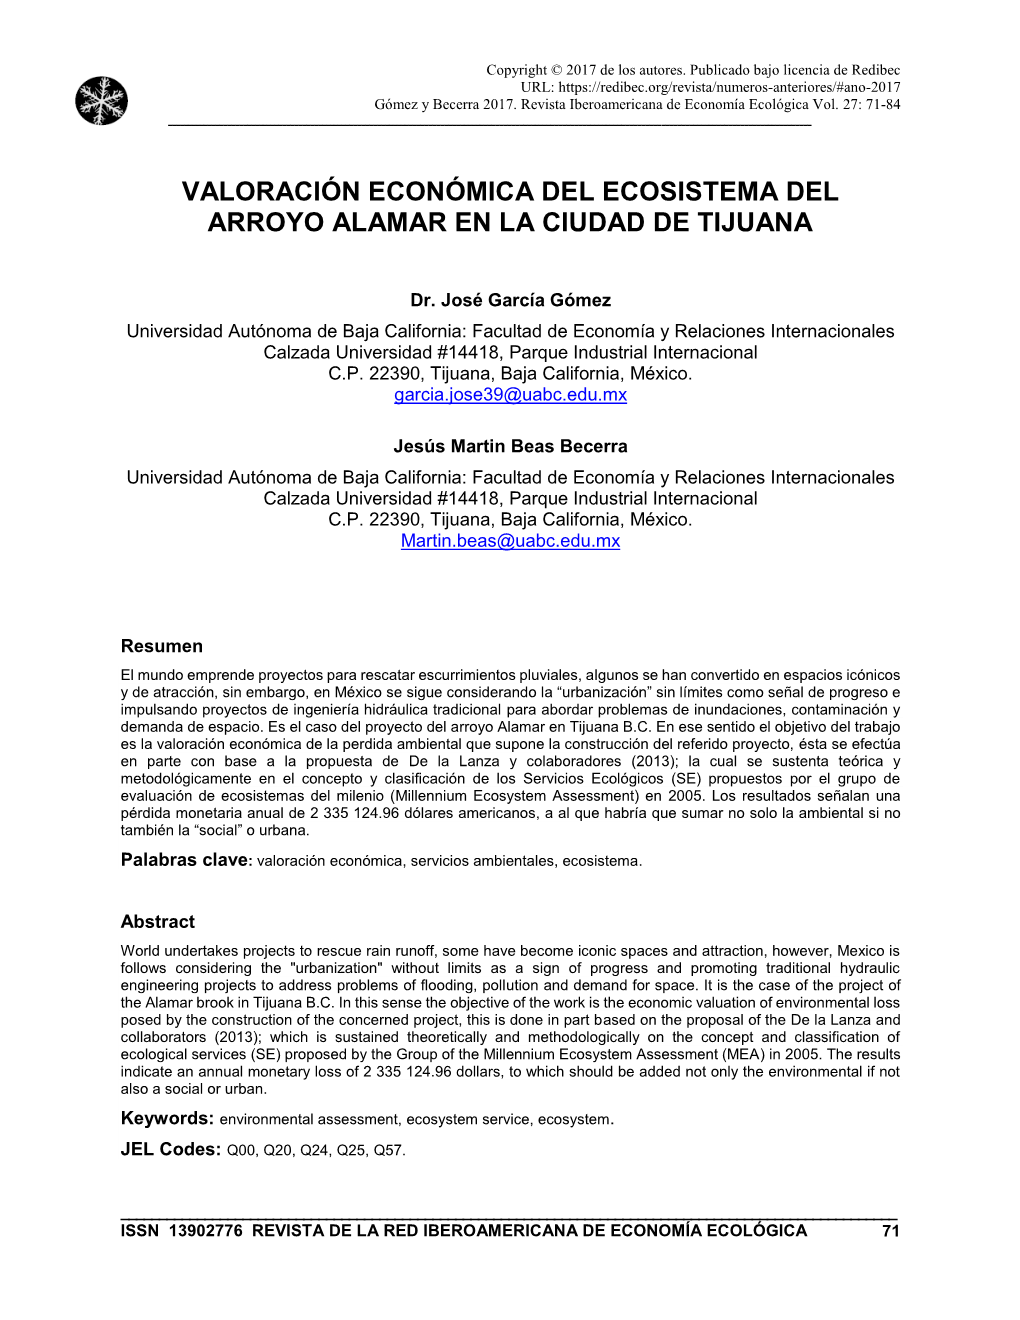 Valoración Económica Del Ecosistema Del Arroyo Alamar En La Ciudad De Tijuana